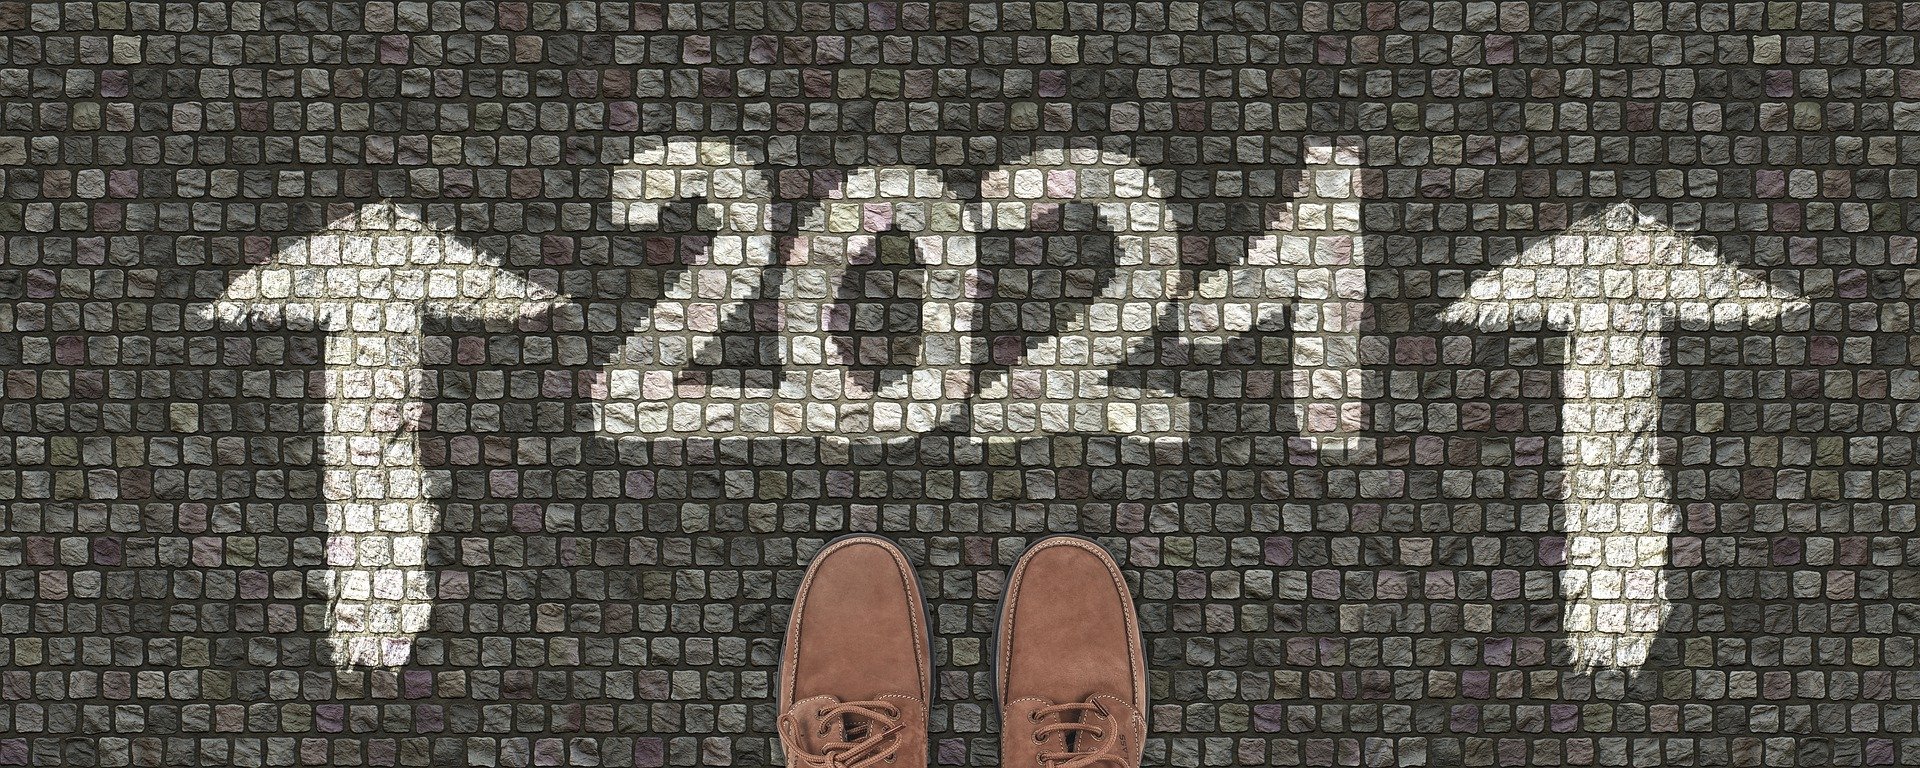 bienvenido 2021